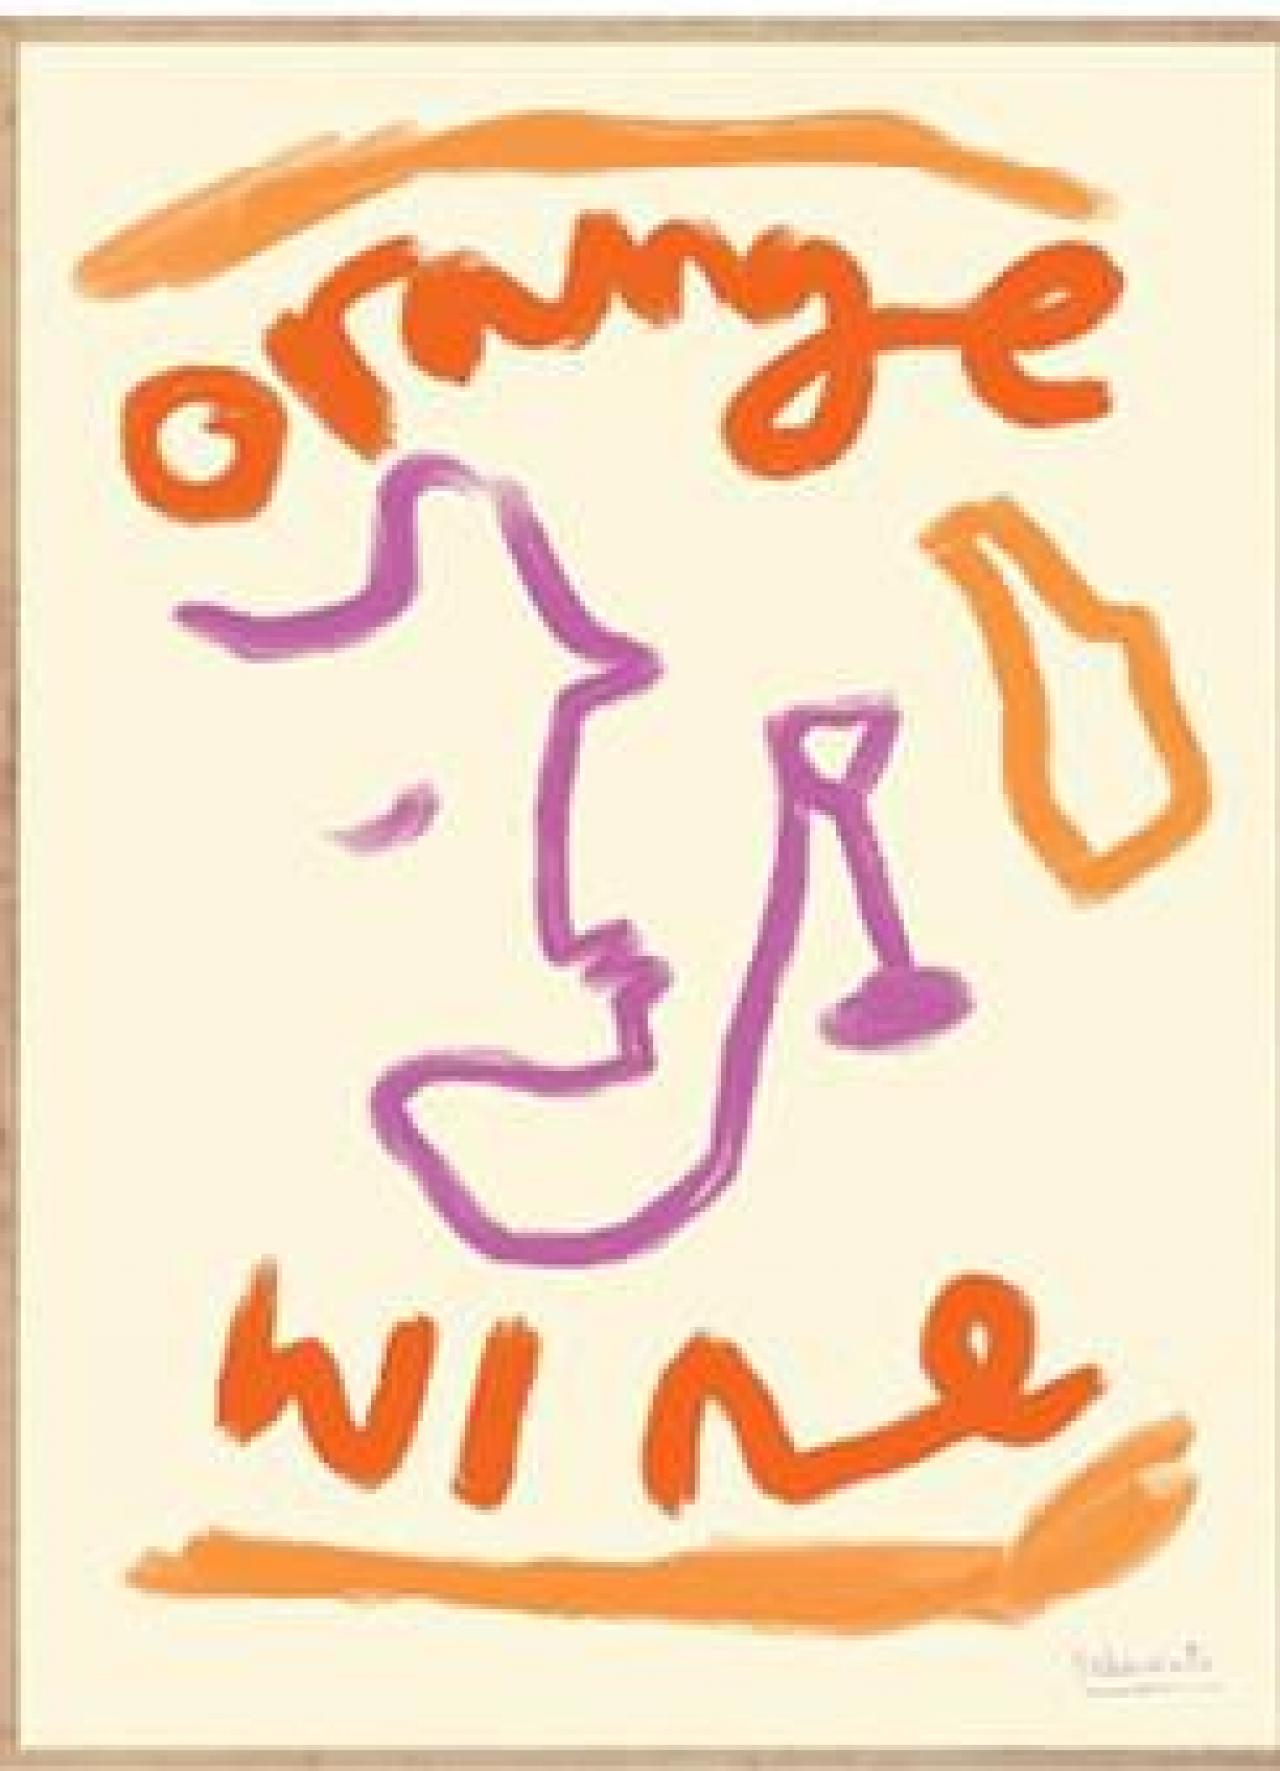 Om mijn gallery wall compleet te maken. Poster van Britse kunstenares Ruby Hughes ‘Orange Wine’ - € 43 - theposterclub.com.